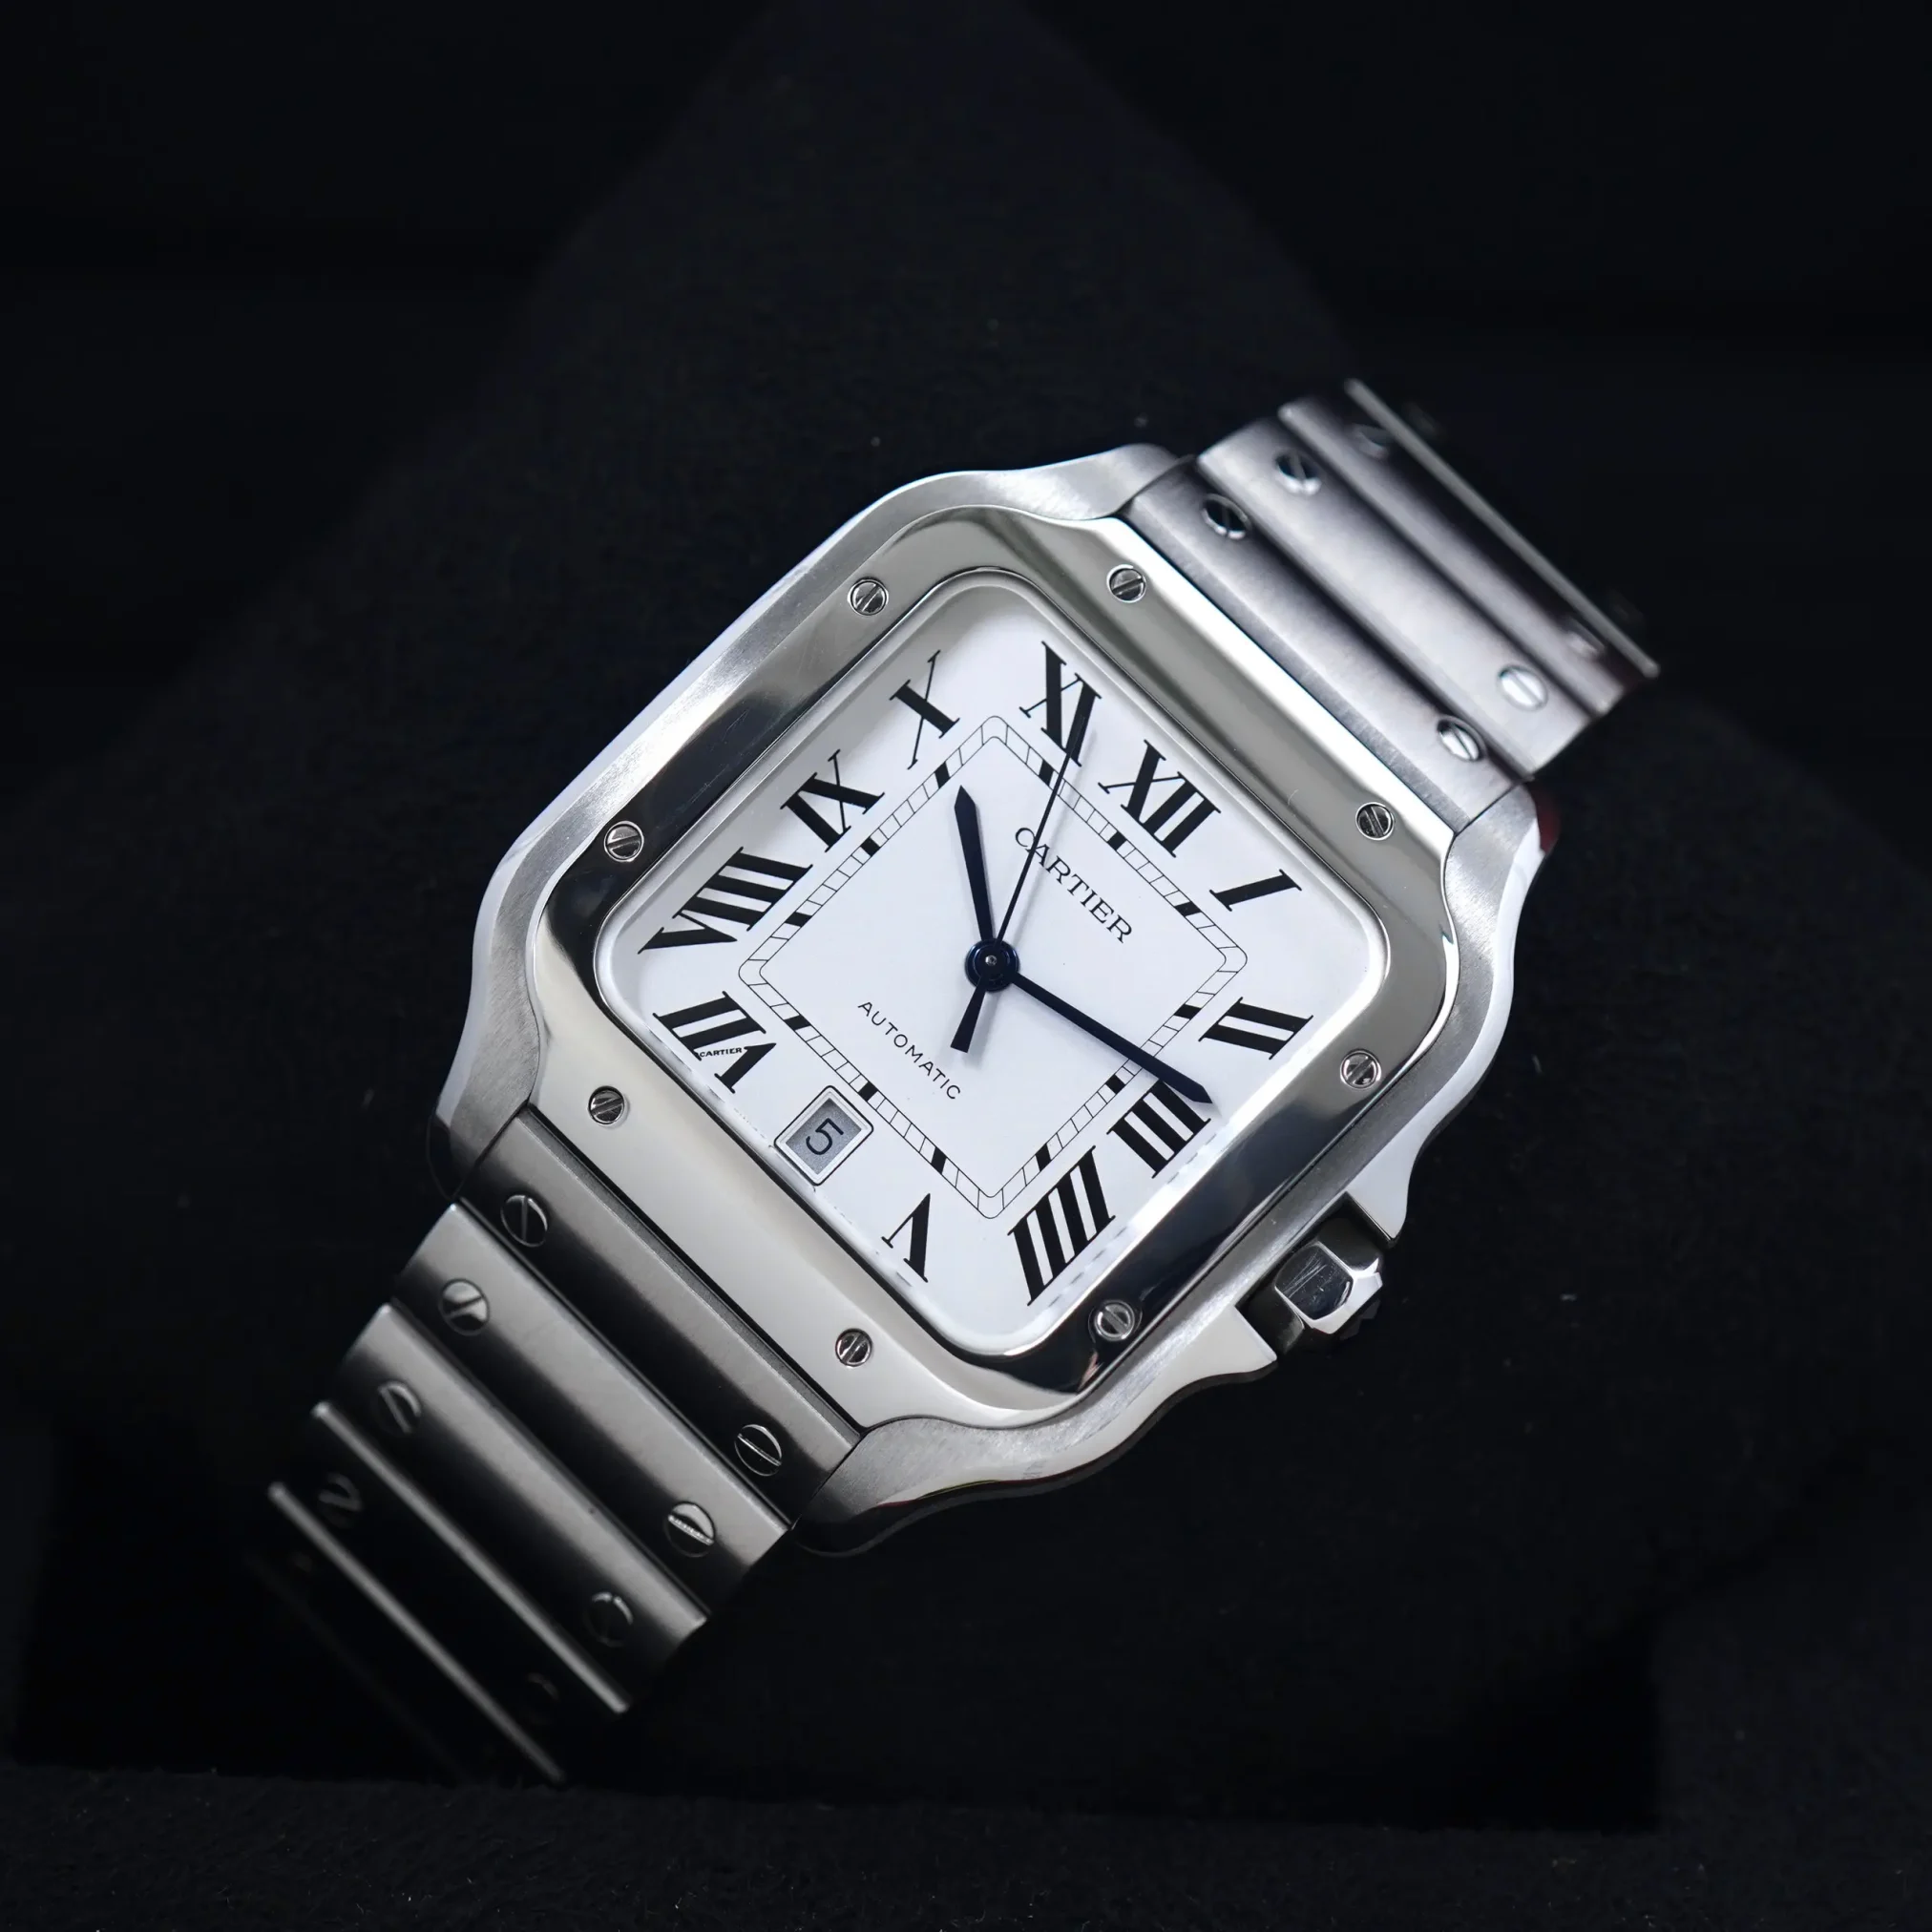 Đồng hồ Cartier Santos De Cartier WSSA0018 mặt số màu trắng. Dây đeo bằng thép. Thân vỏ bằng thép.